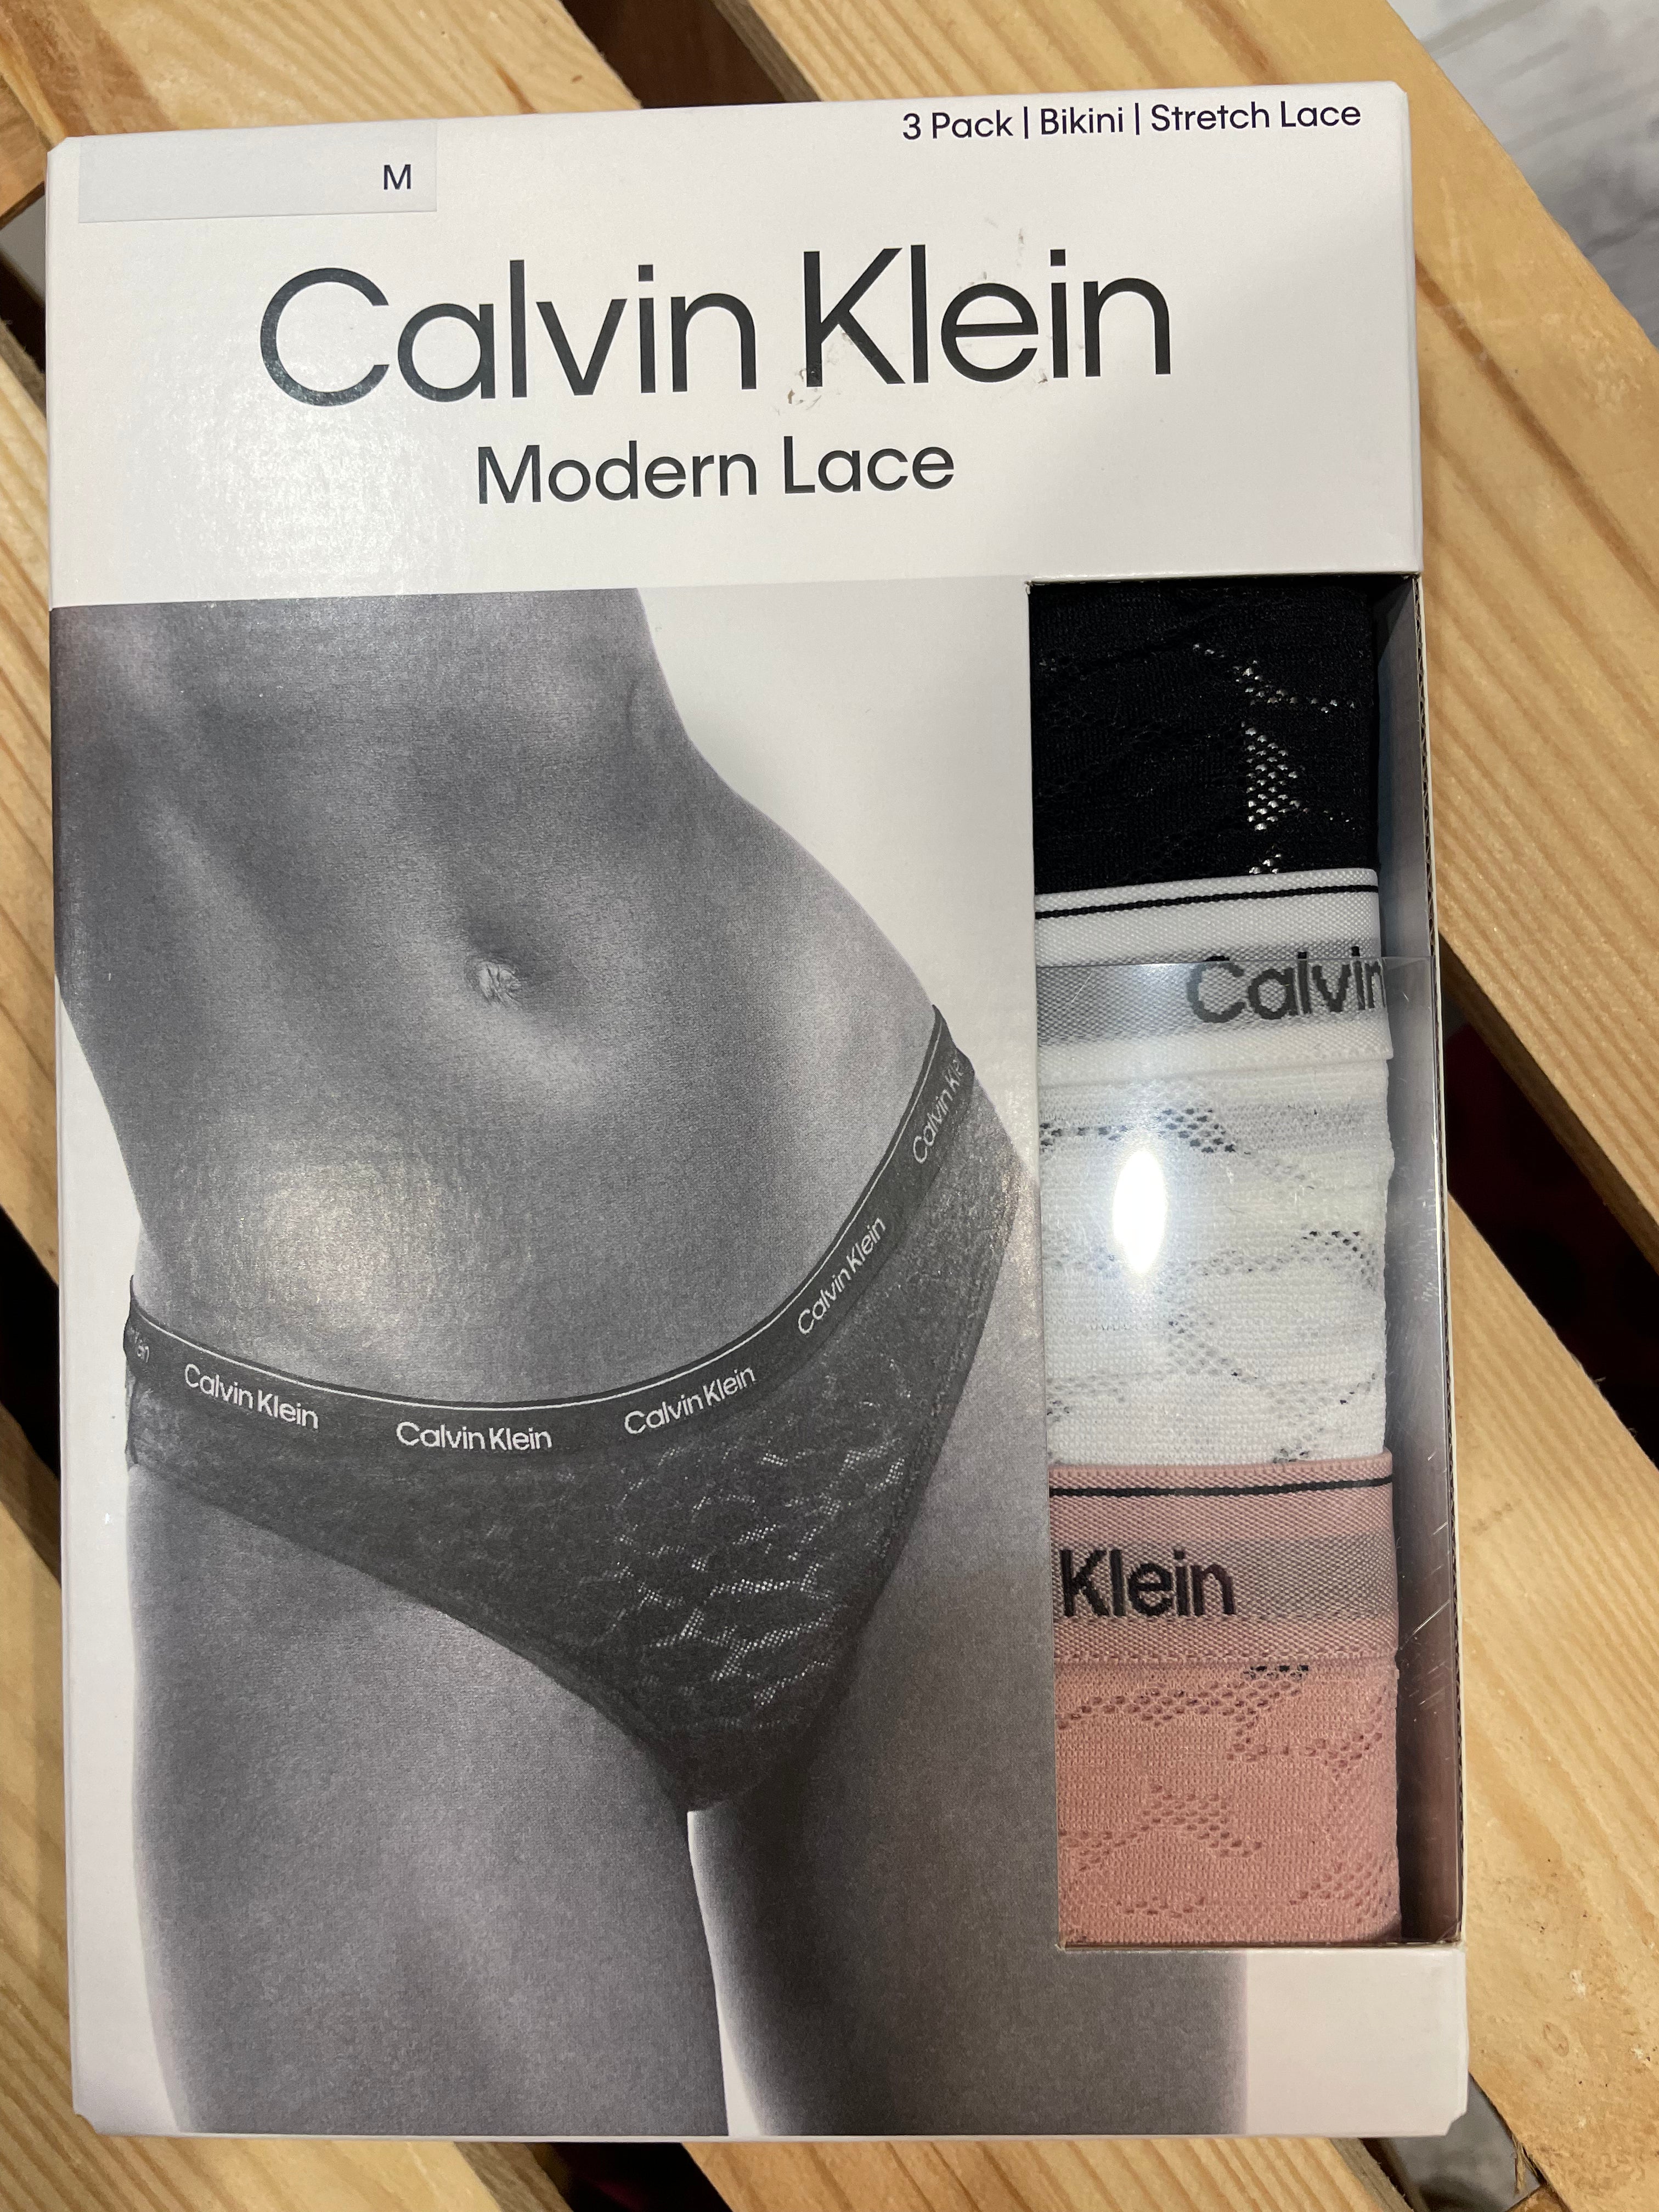 Bragas Calvin Klein, Nueva colección